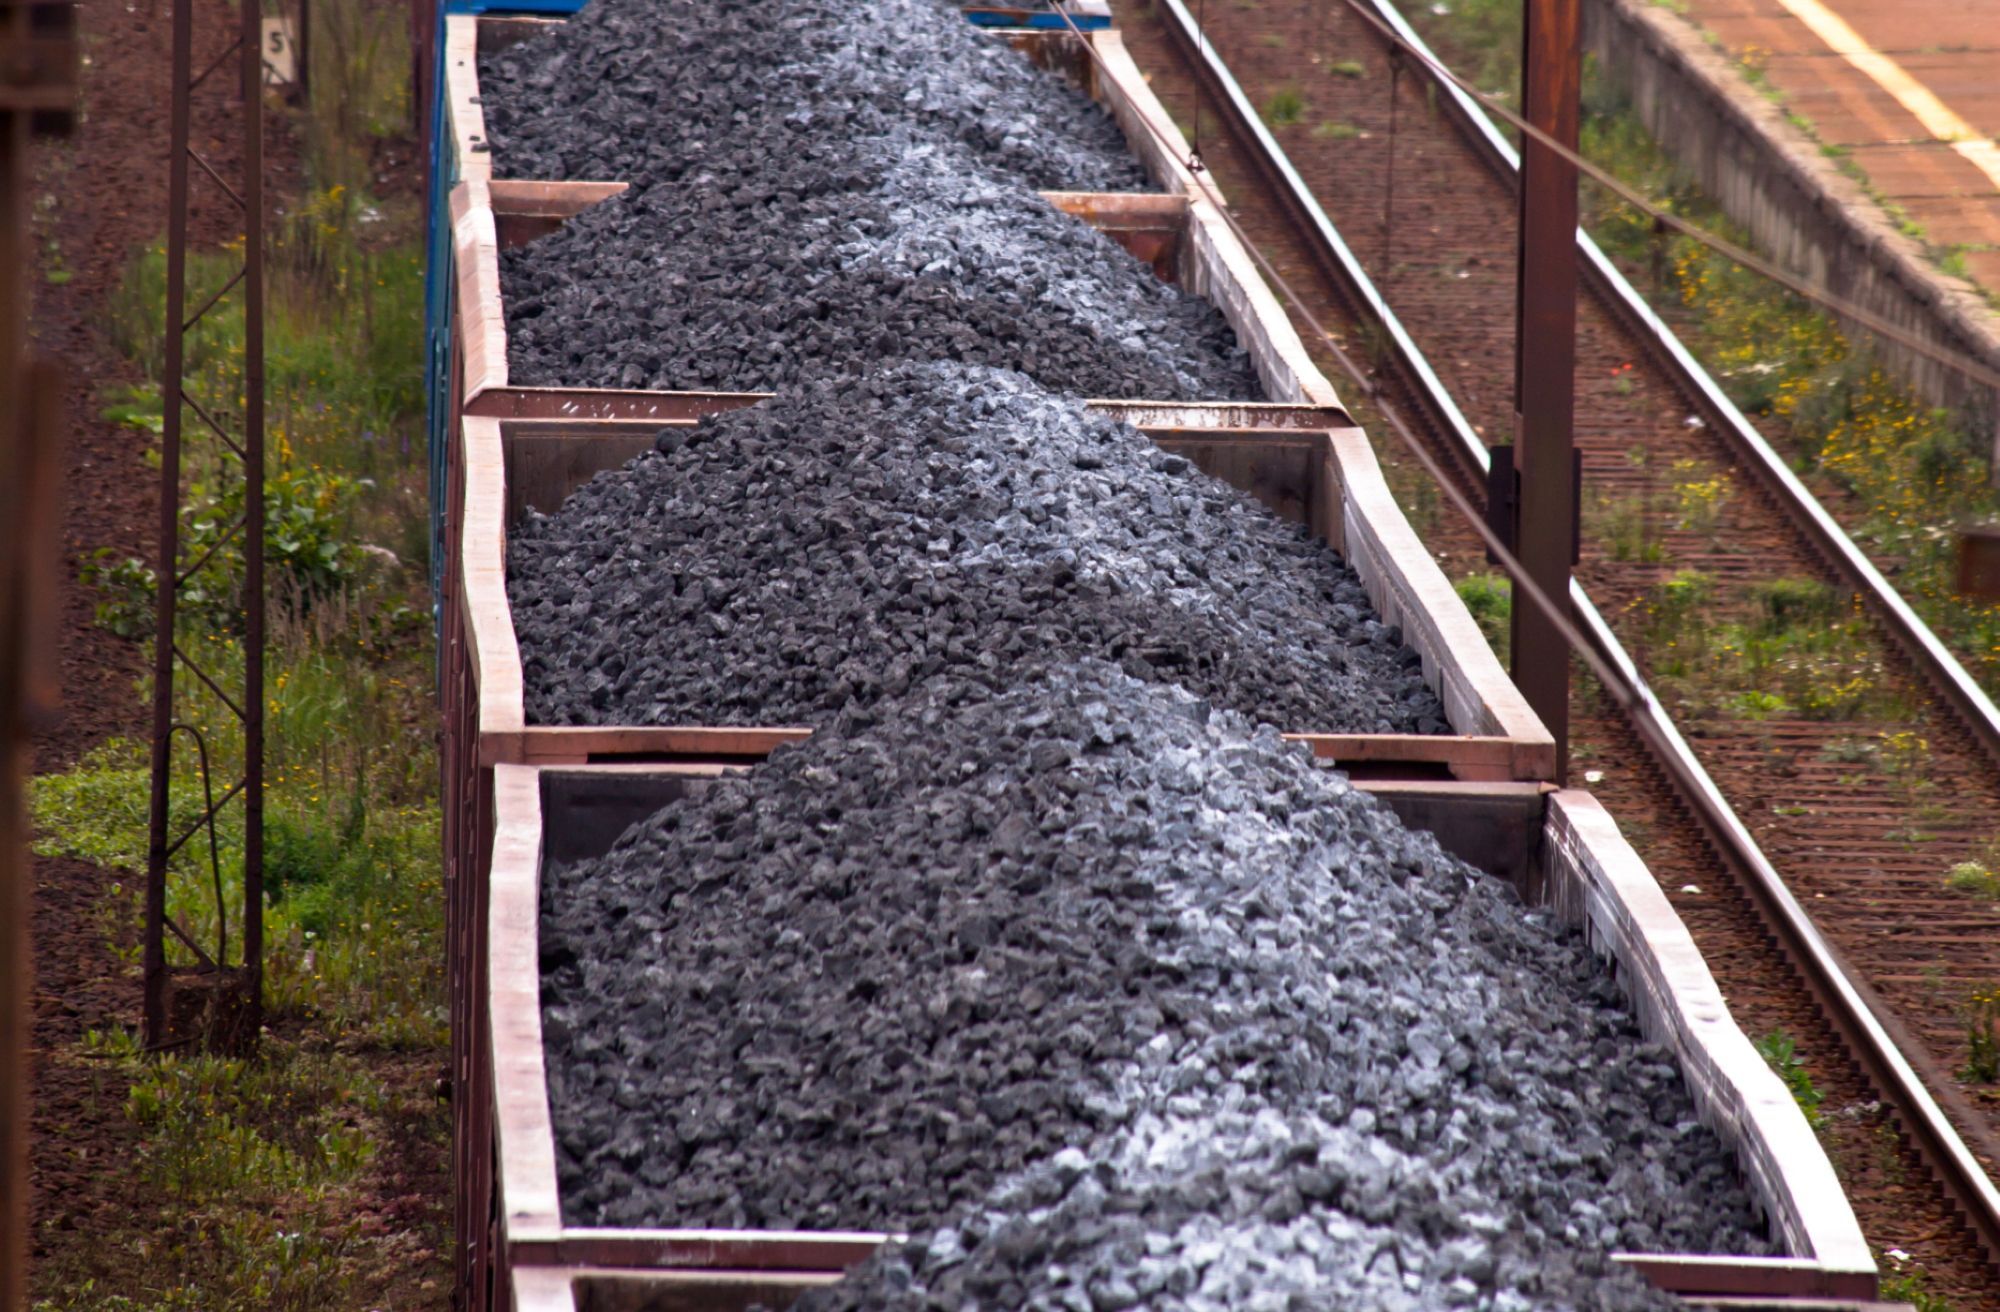 Realizacja dostaw węgla dla mieszkańców będzie możliwa natychmiast po podpisaniu umowy i przekazaniu zamówień na węgiel (fot. shutterstock)